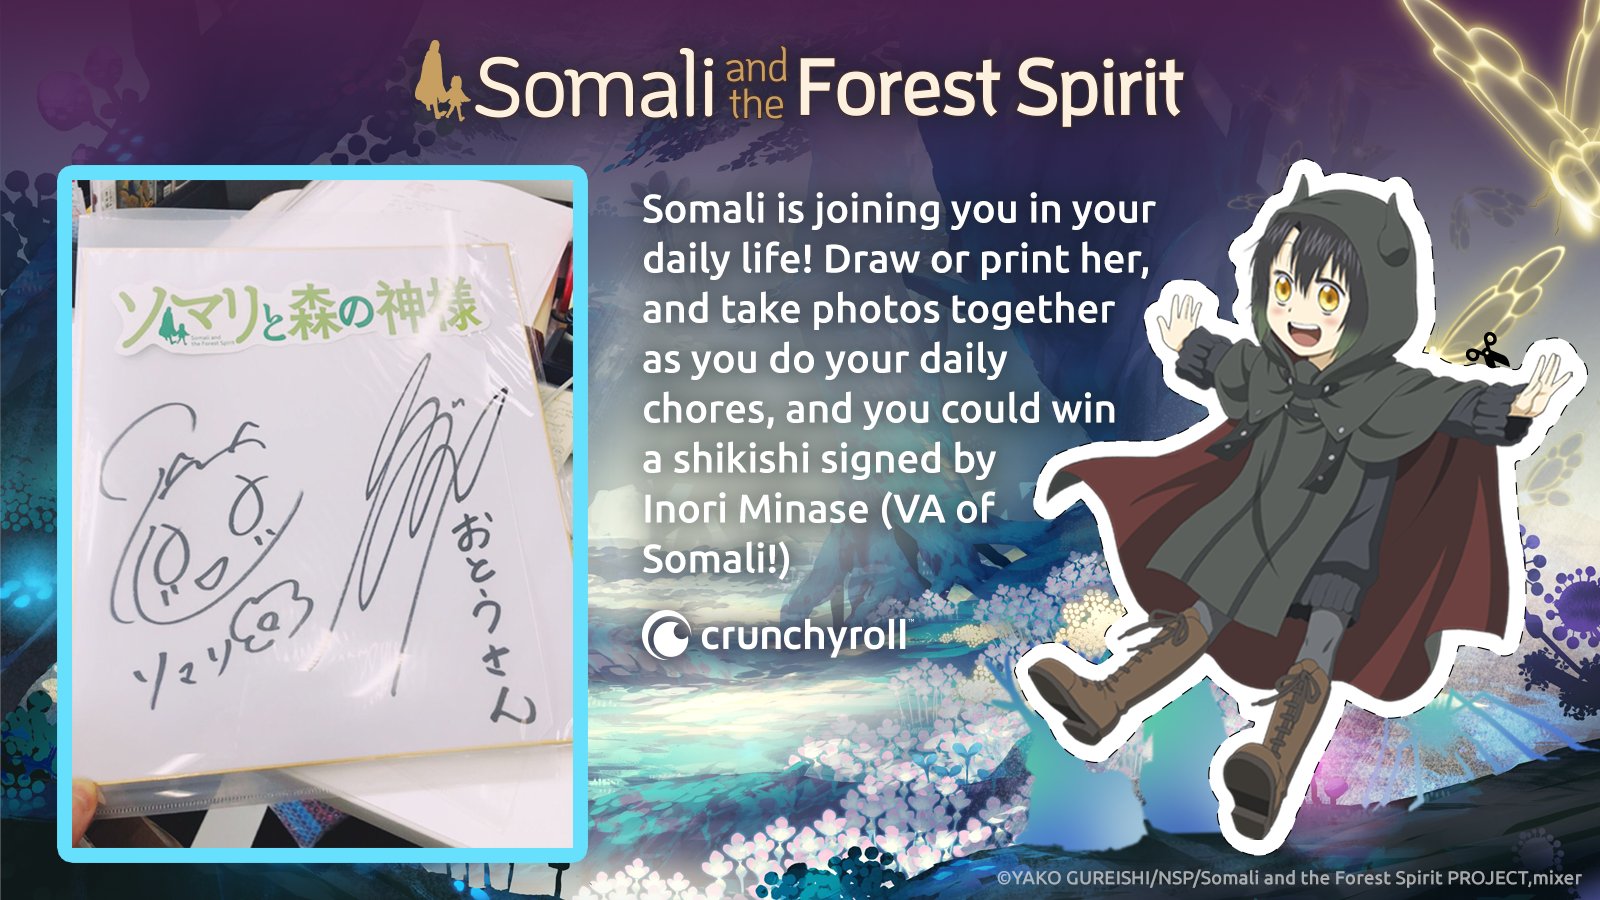 Fanart] I drew Somali~! - SomaliForestSpirit